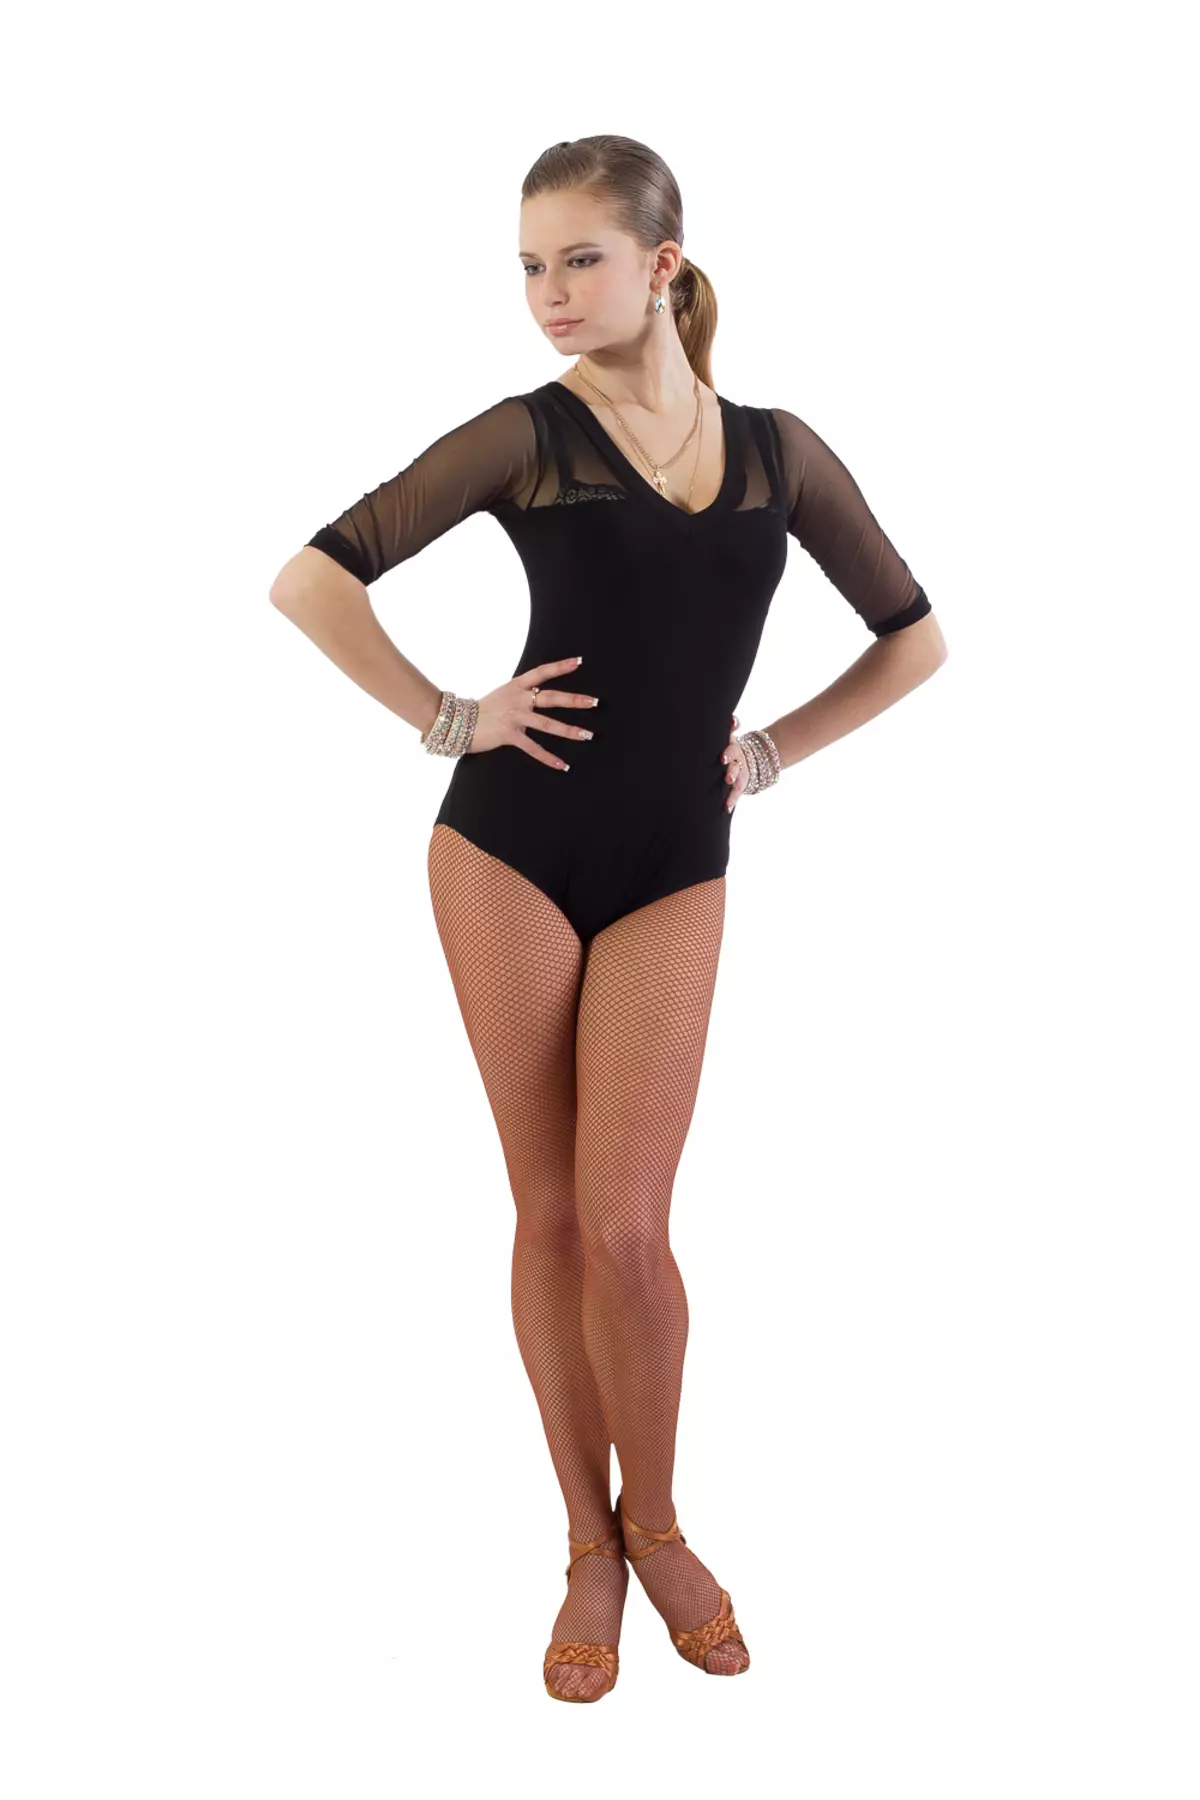 Dance Swimsuit (59 fotoj): Dancaj sportaj modeloj kun jupo por salono-dancado, kiel ĝi nomiĝas rozkolora kaj blanka 13394_53